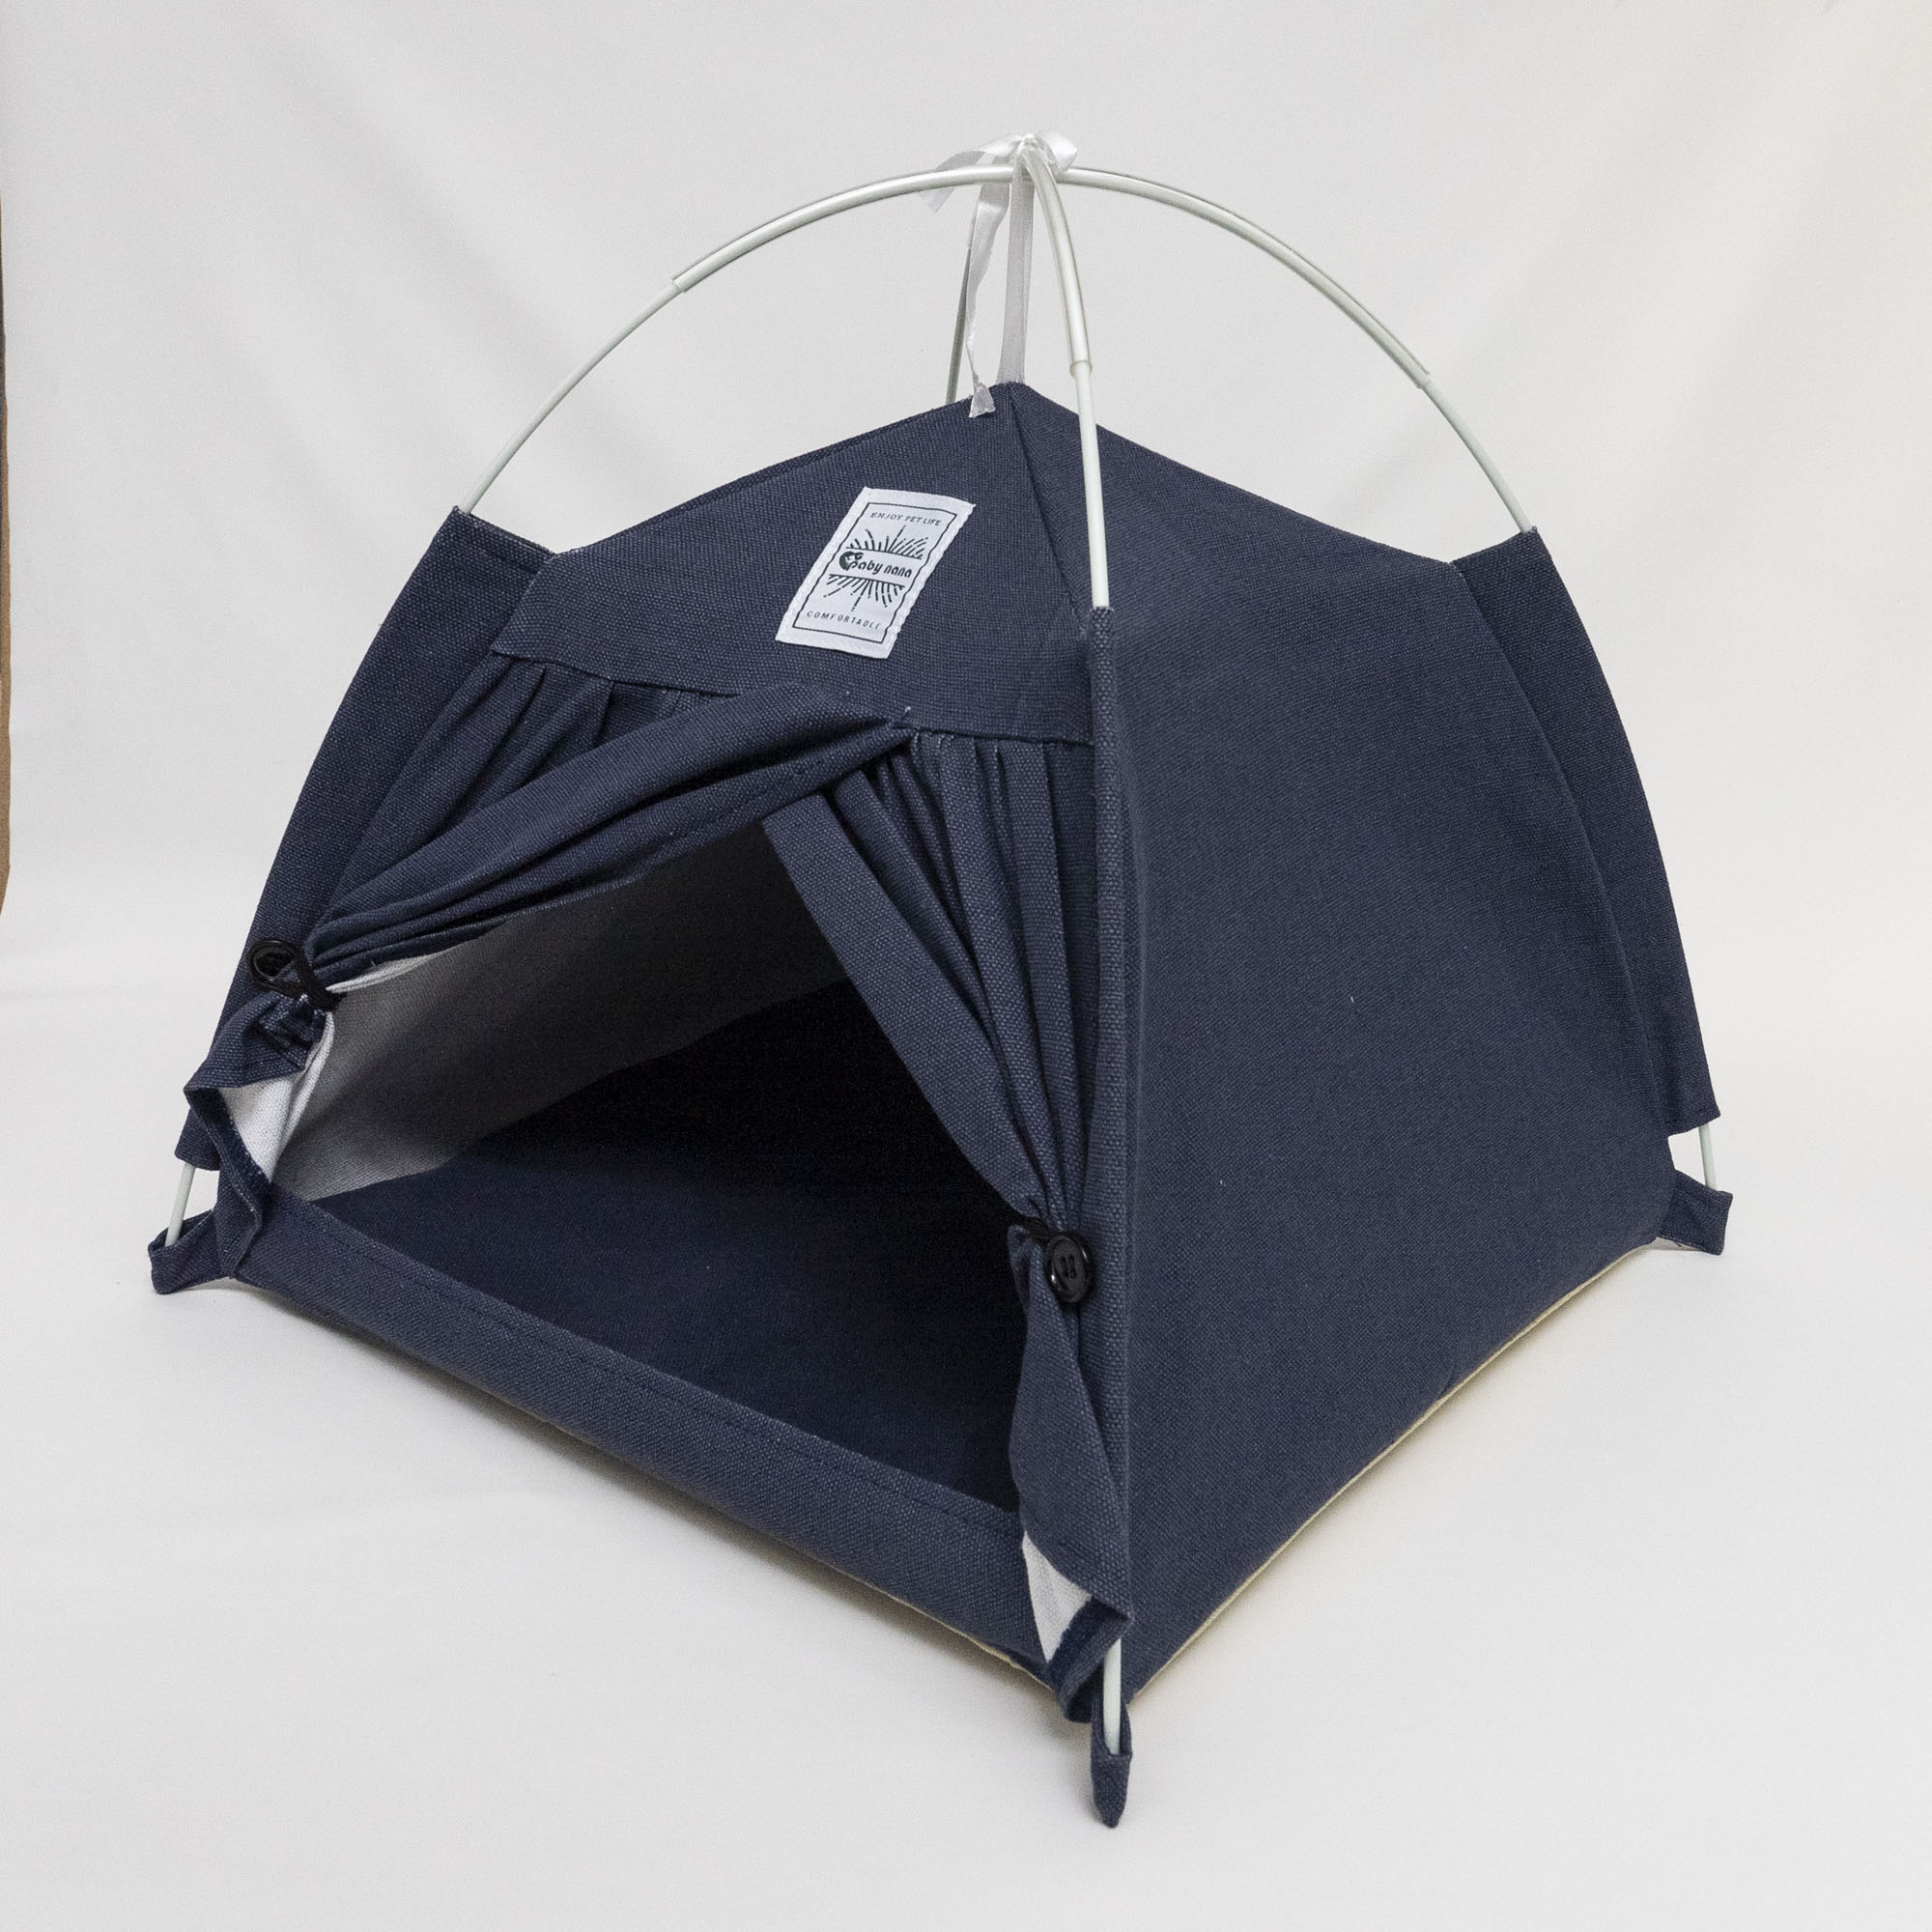 ペット用テント｜ワンタッチで設営可能！柔らかい座り心地を実現、キャンプ気分を満喫できる。|undefined